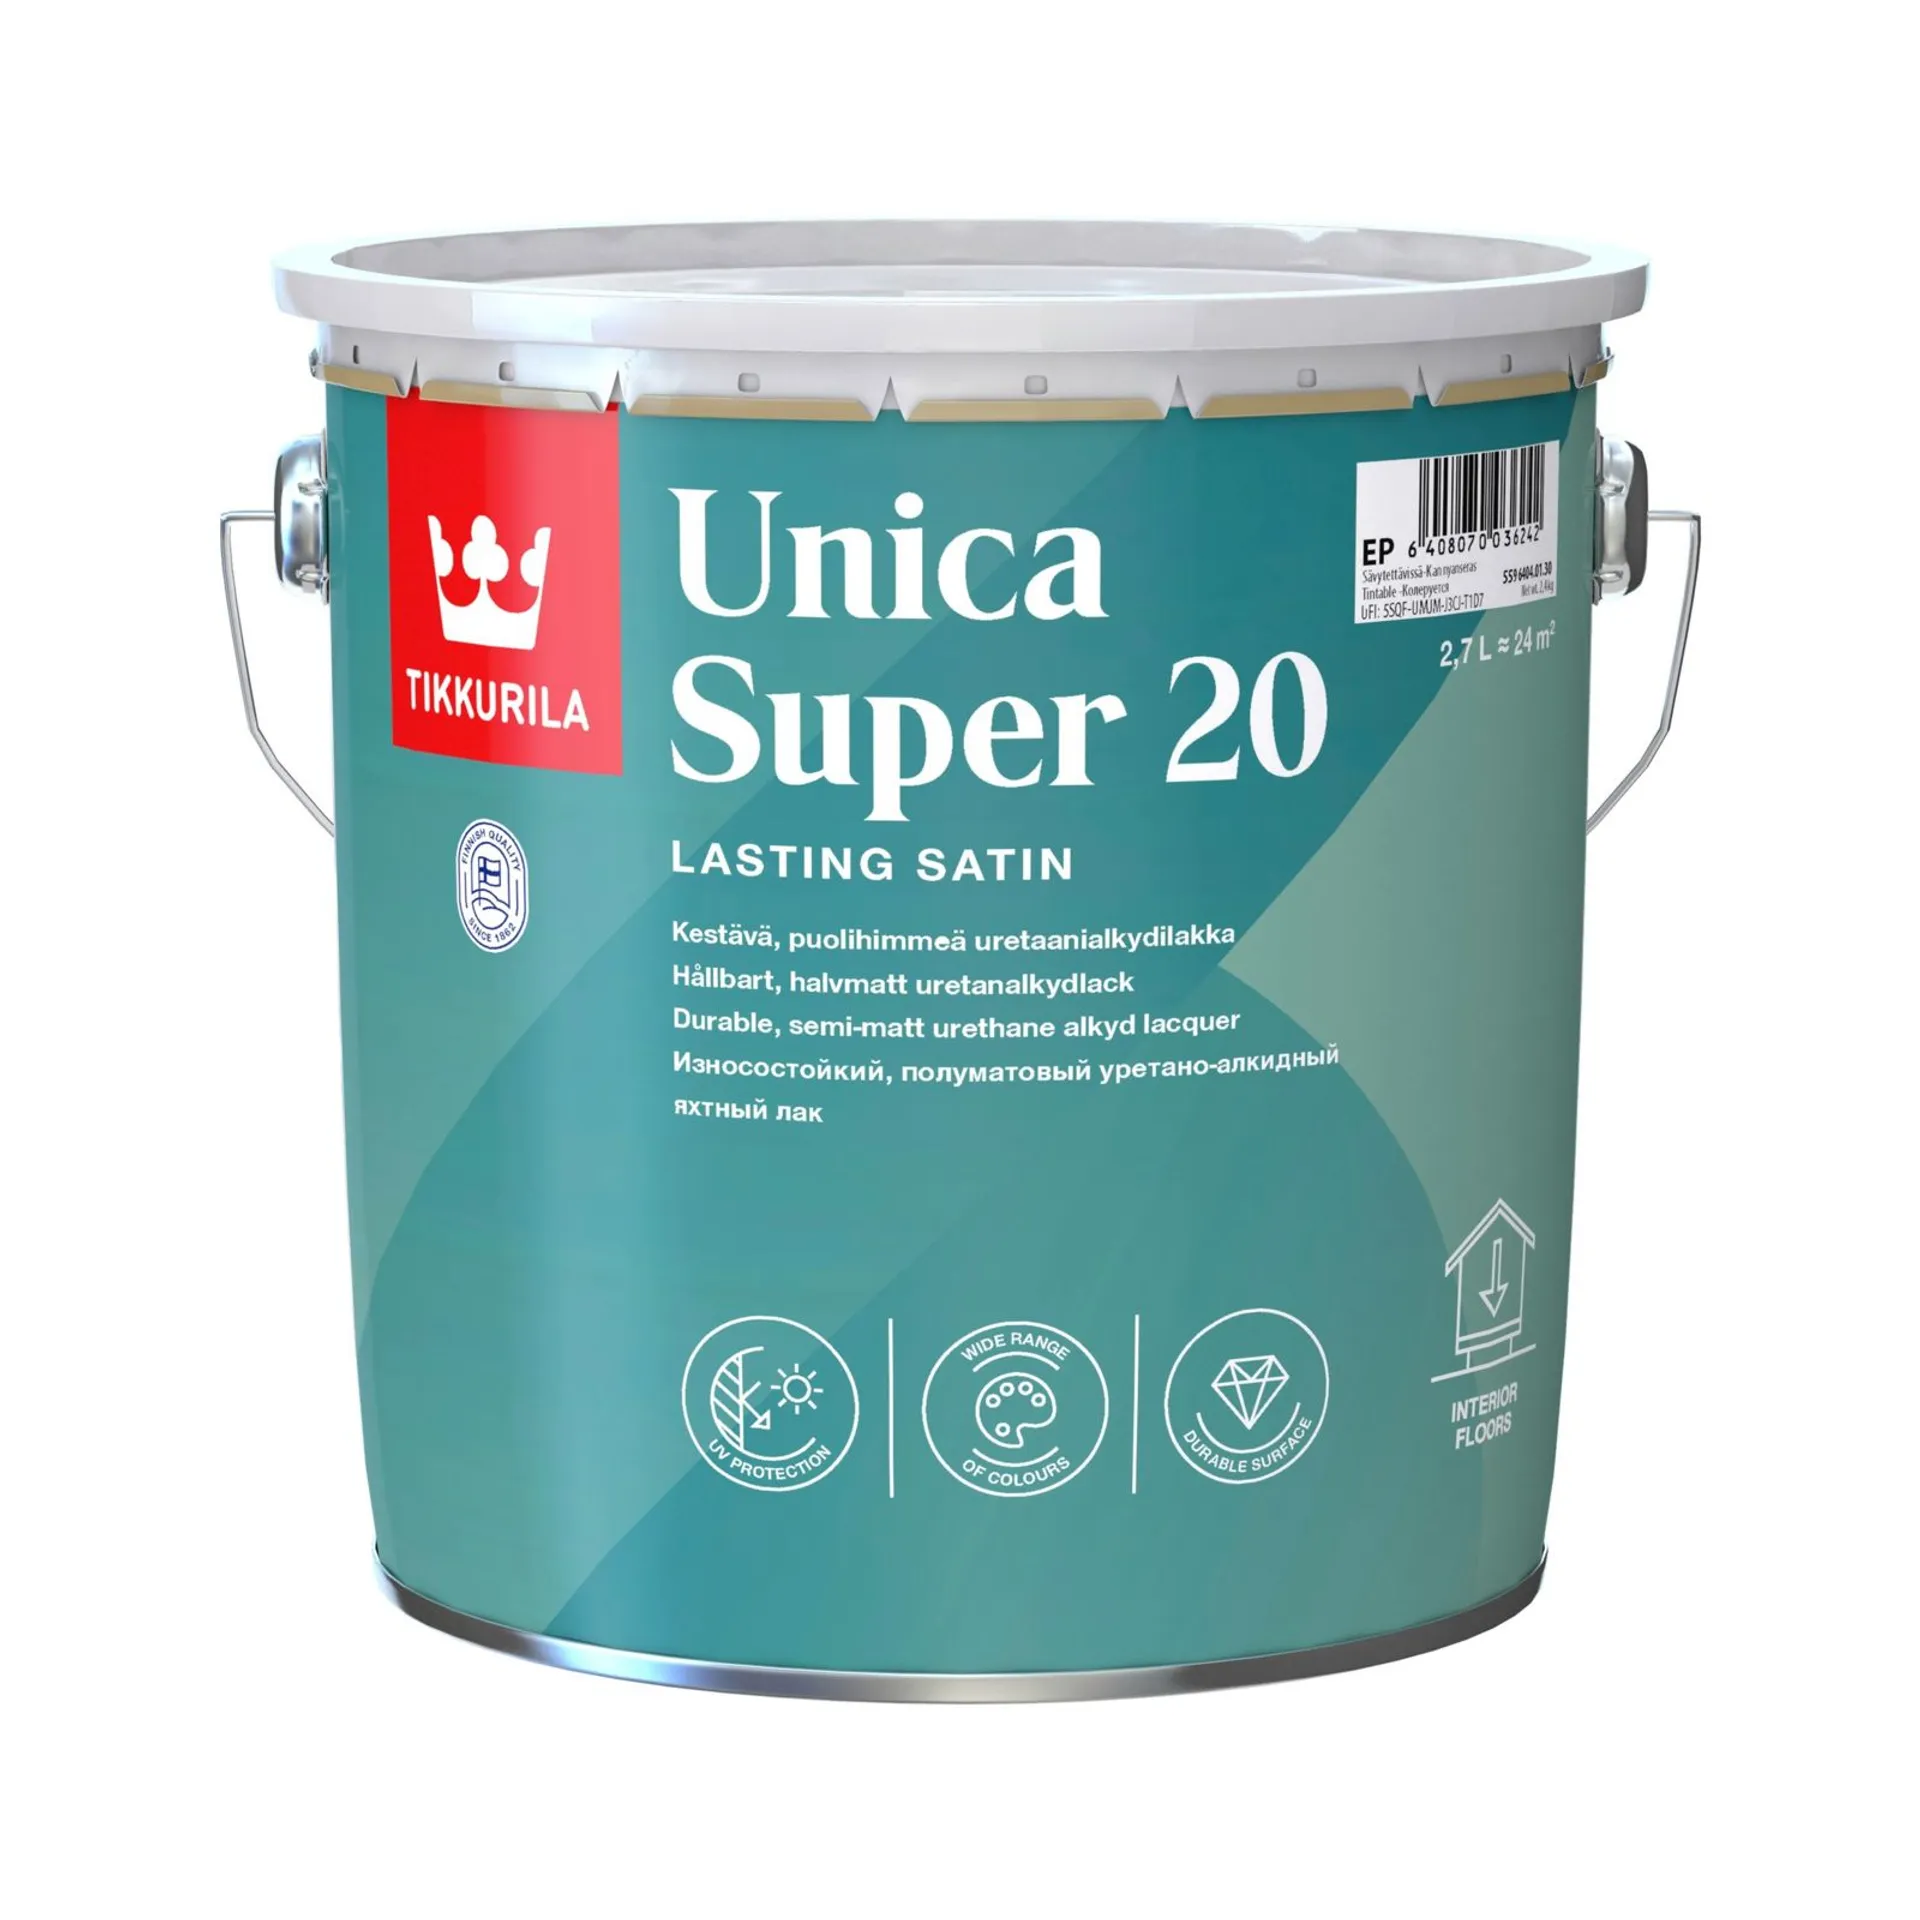 Tikkurila Unica Super 20 uretaanialkydilakka 2,7l sävytettävissä puolihimmeä